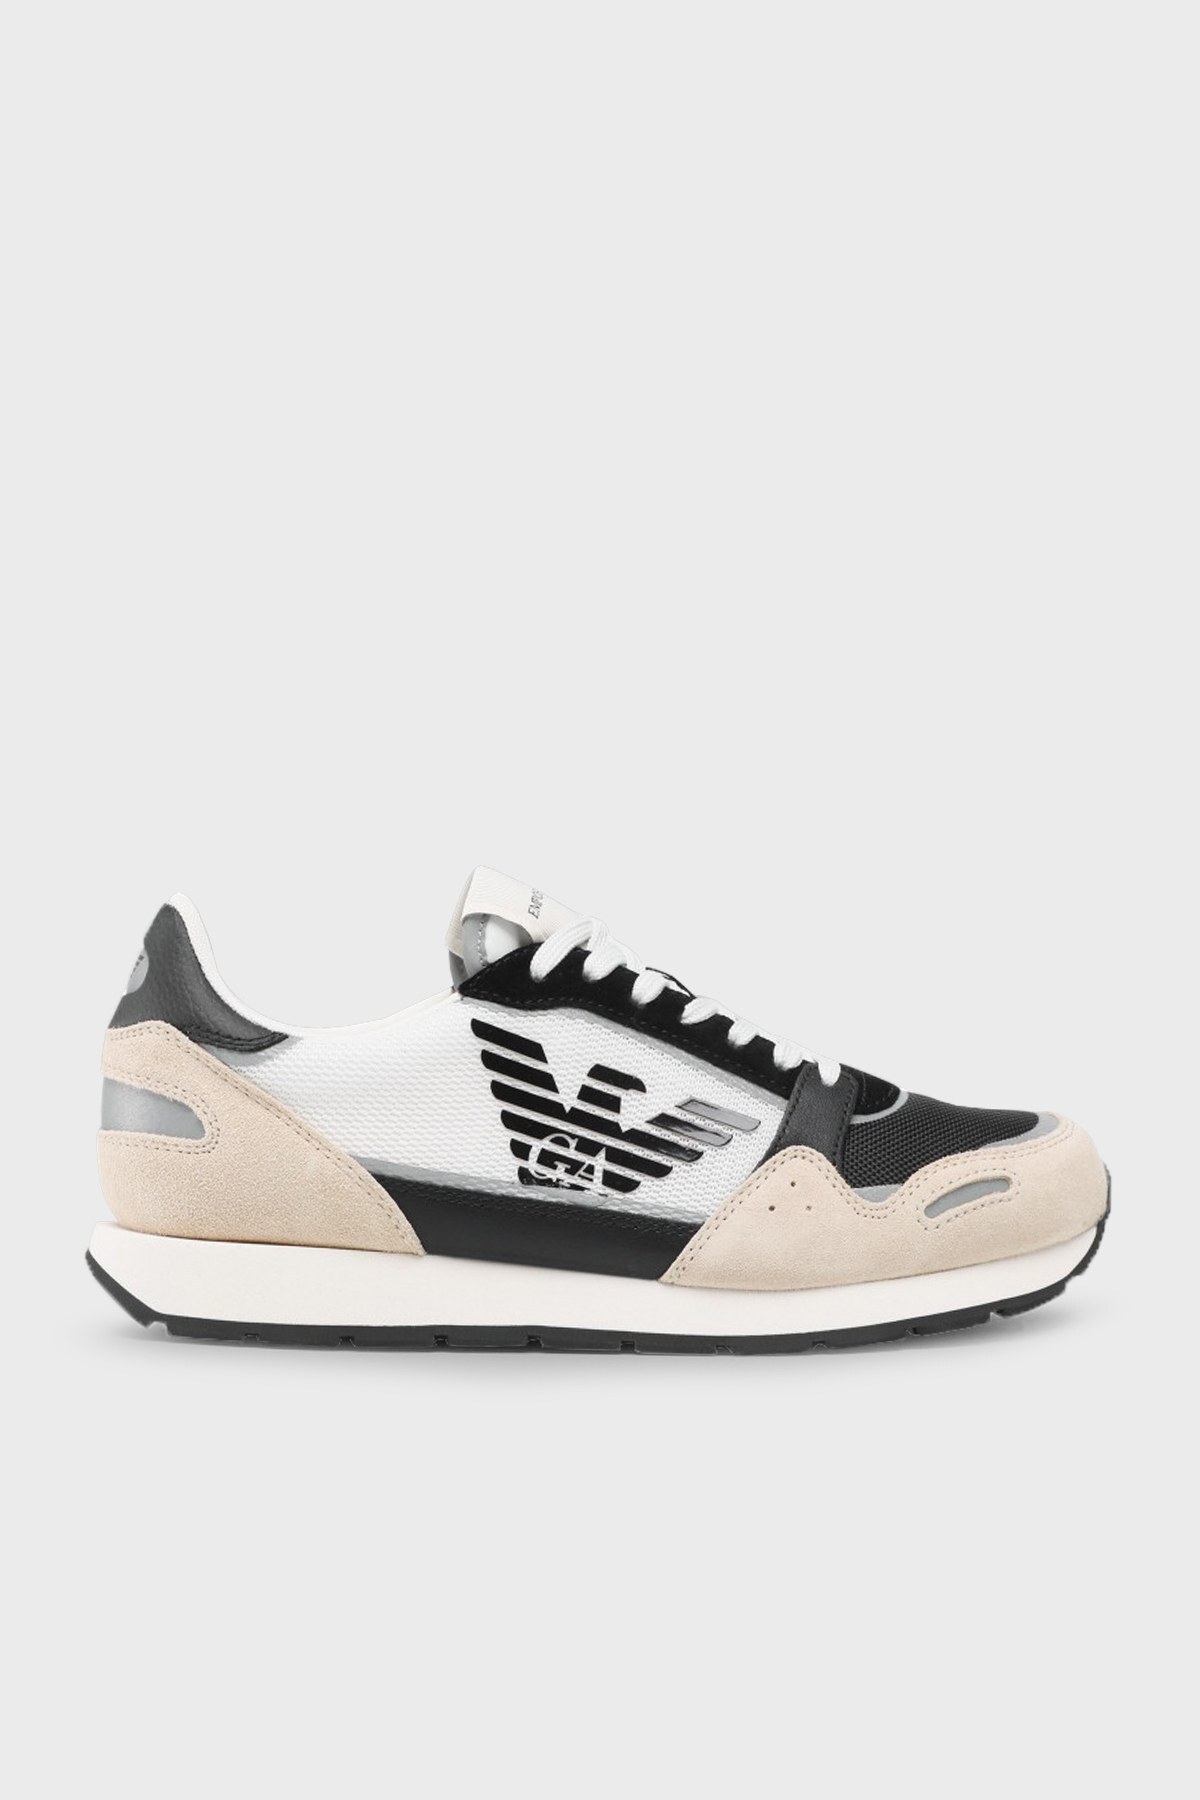 Emporio Armani Logolu Bağcıklı Hakiki Deri Sneaker Erkek Ayakkabı X4X537 XM678 Q826 BEJ-SİYAH